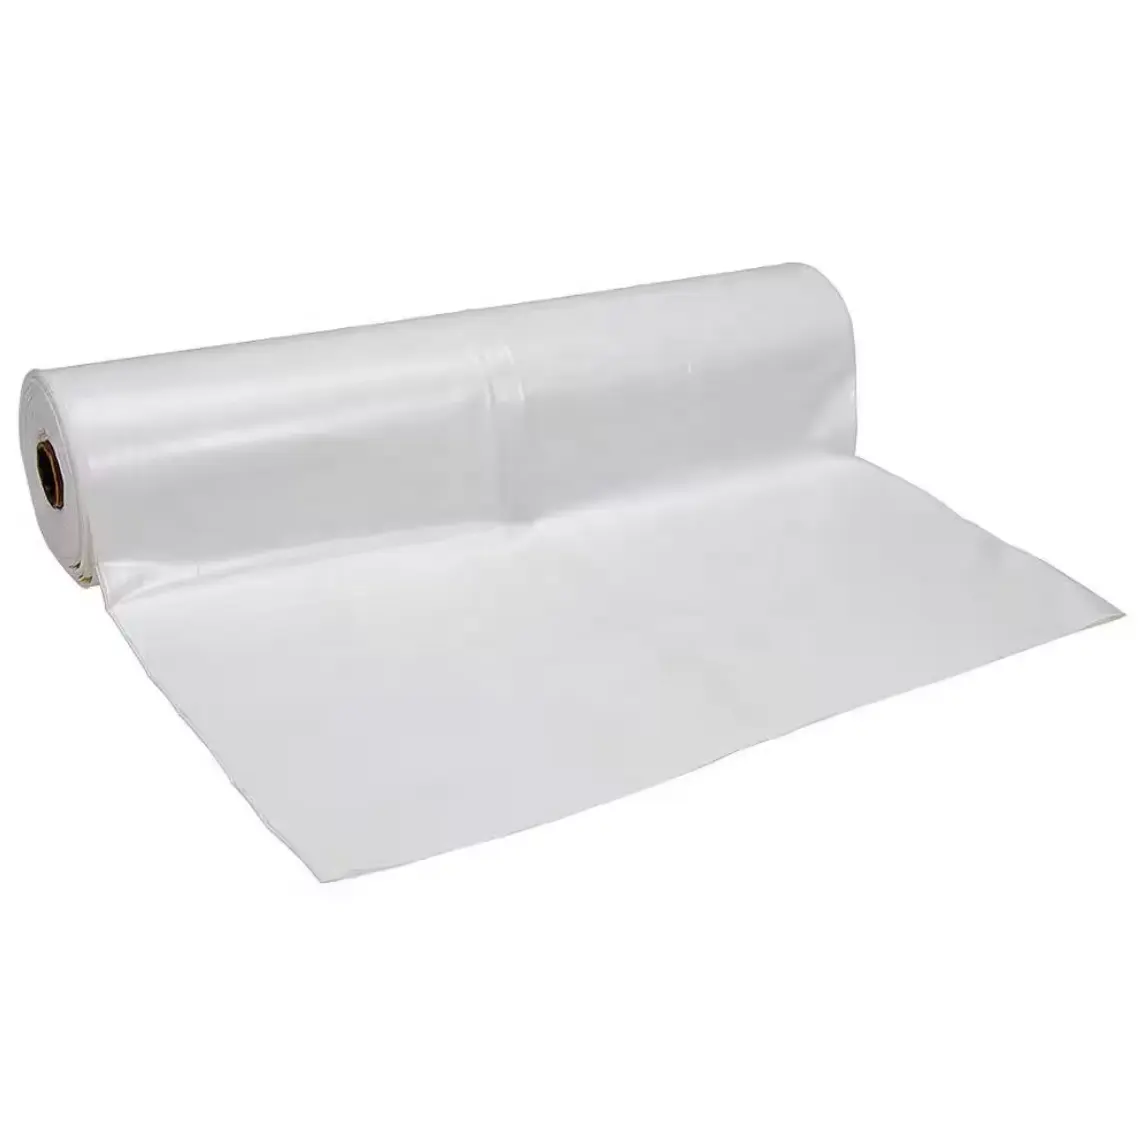 لفافة غشاء بولي باندا للحماية من الأرضيات باللون الأبيض والأسود من البلاستيك لاستخدامات التعتيم في الدفيئة أو أثناء التشييد